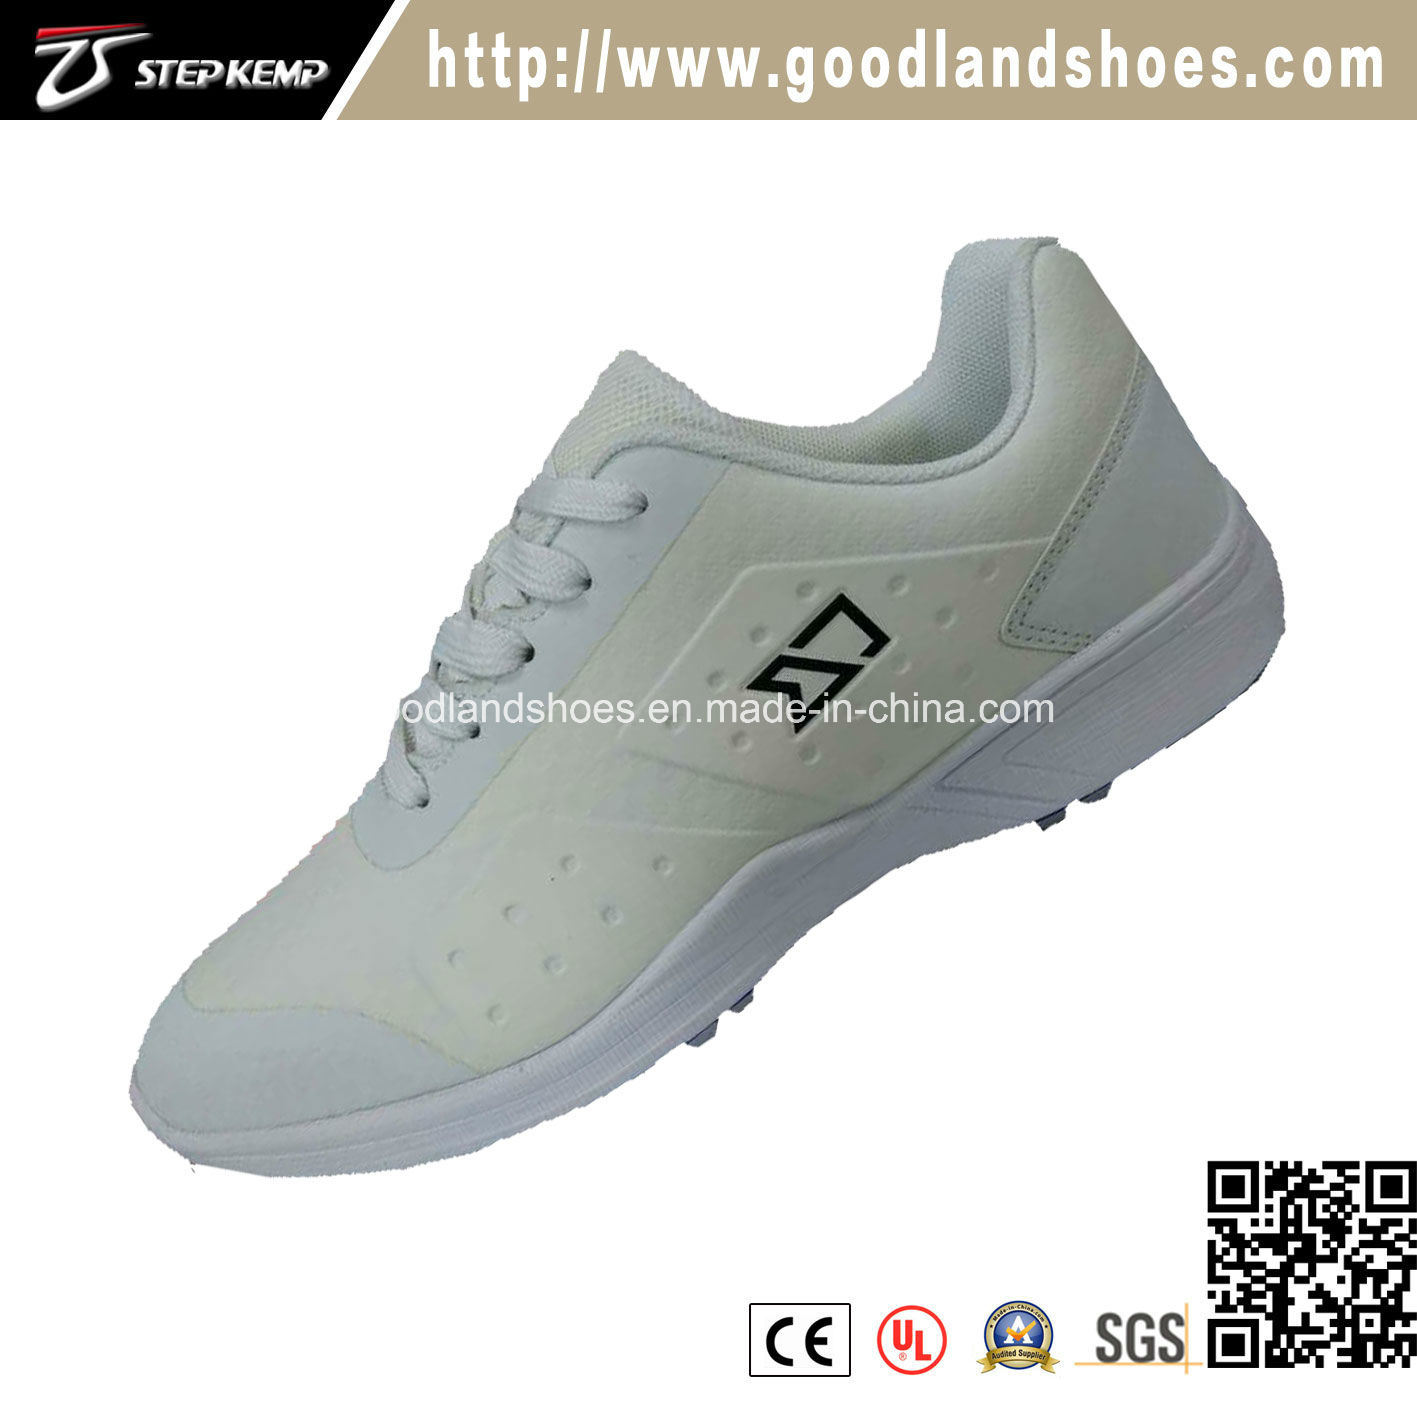 New Men's Tour Sport Lightweight Casual Golf Shoes 20216-1